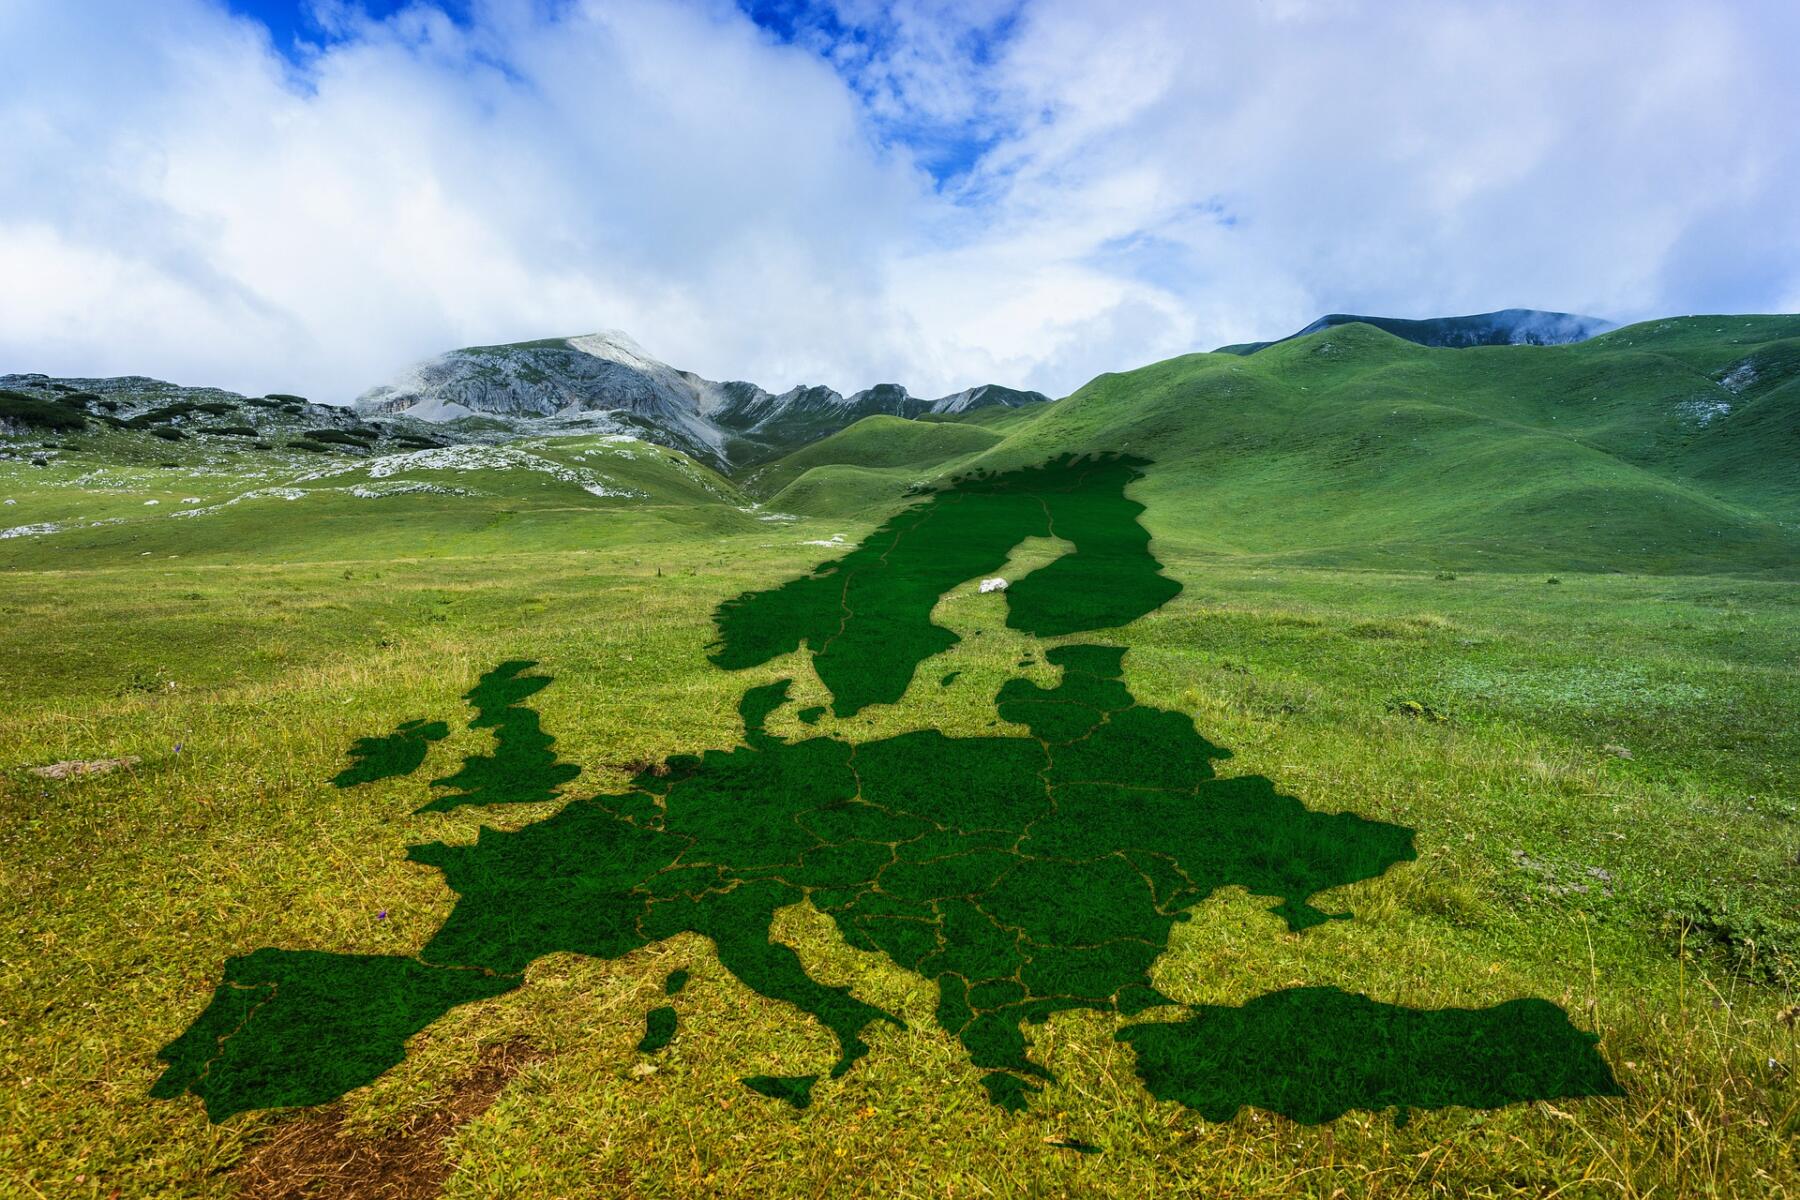 Il patto climatico europeo e l’impegno della società civile